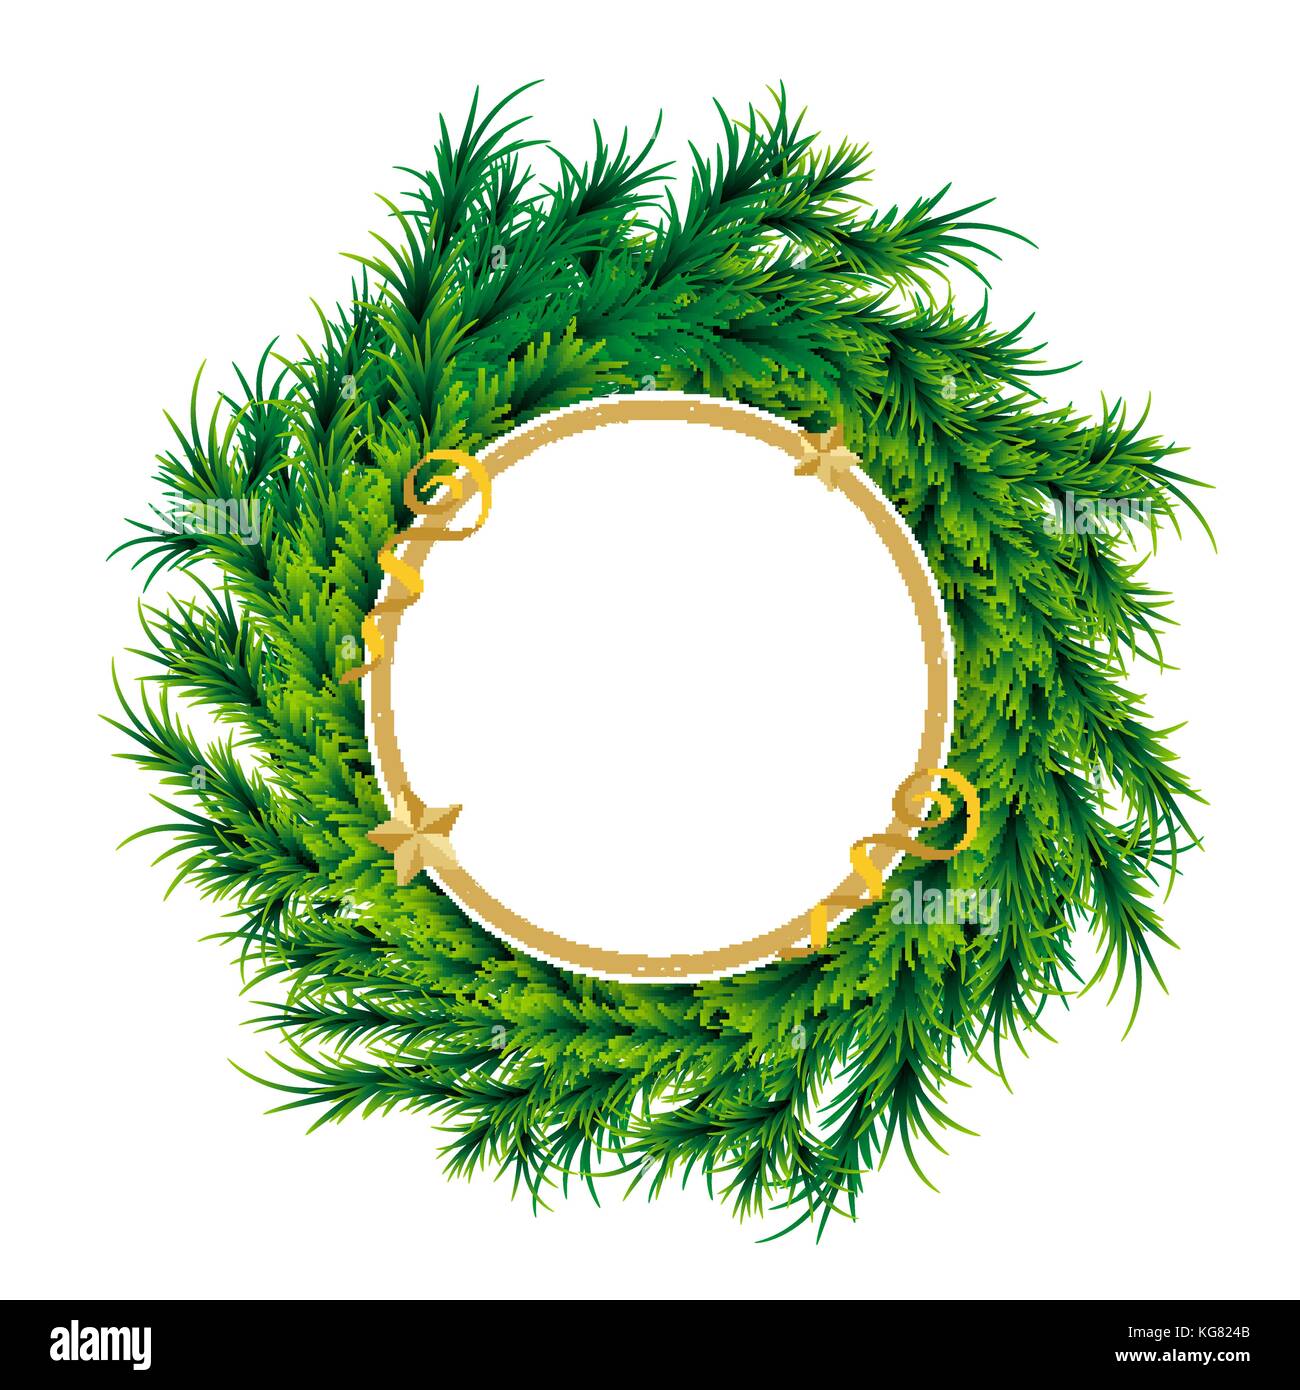 Weihnachten Kranz Xmas Tree ball Dekoration Karte Stock Vektor